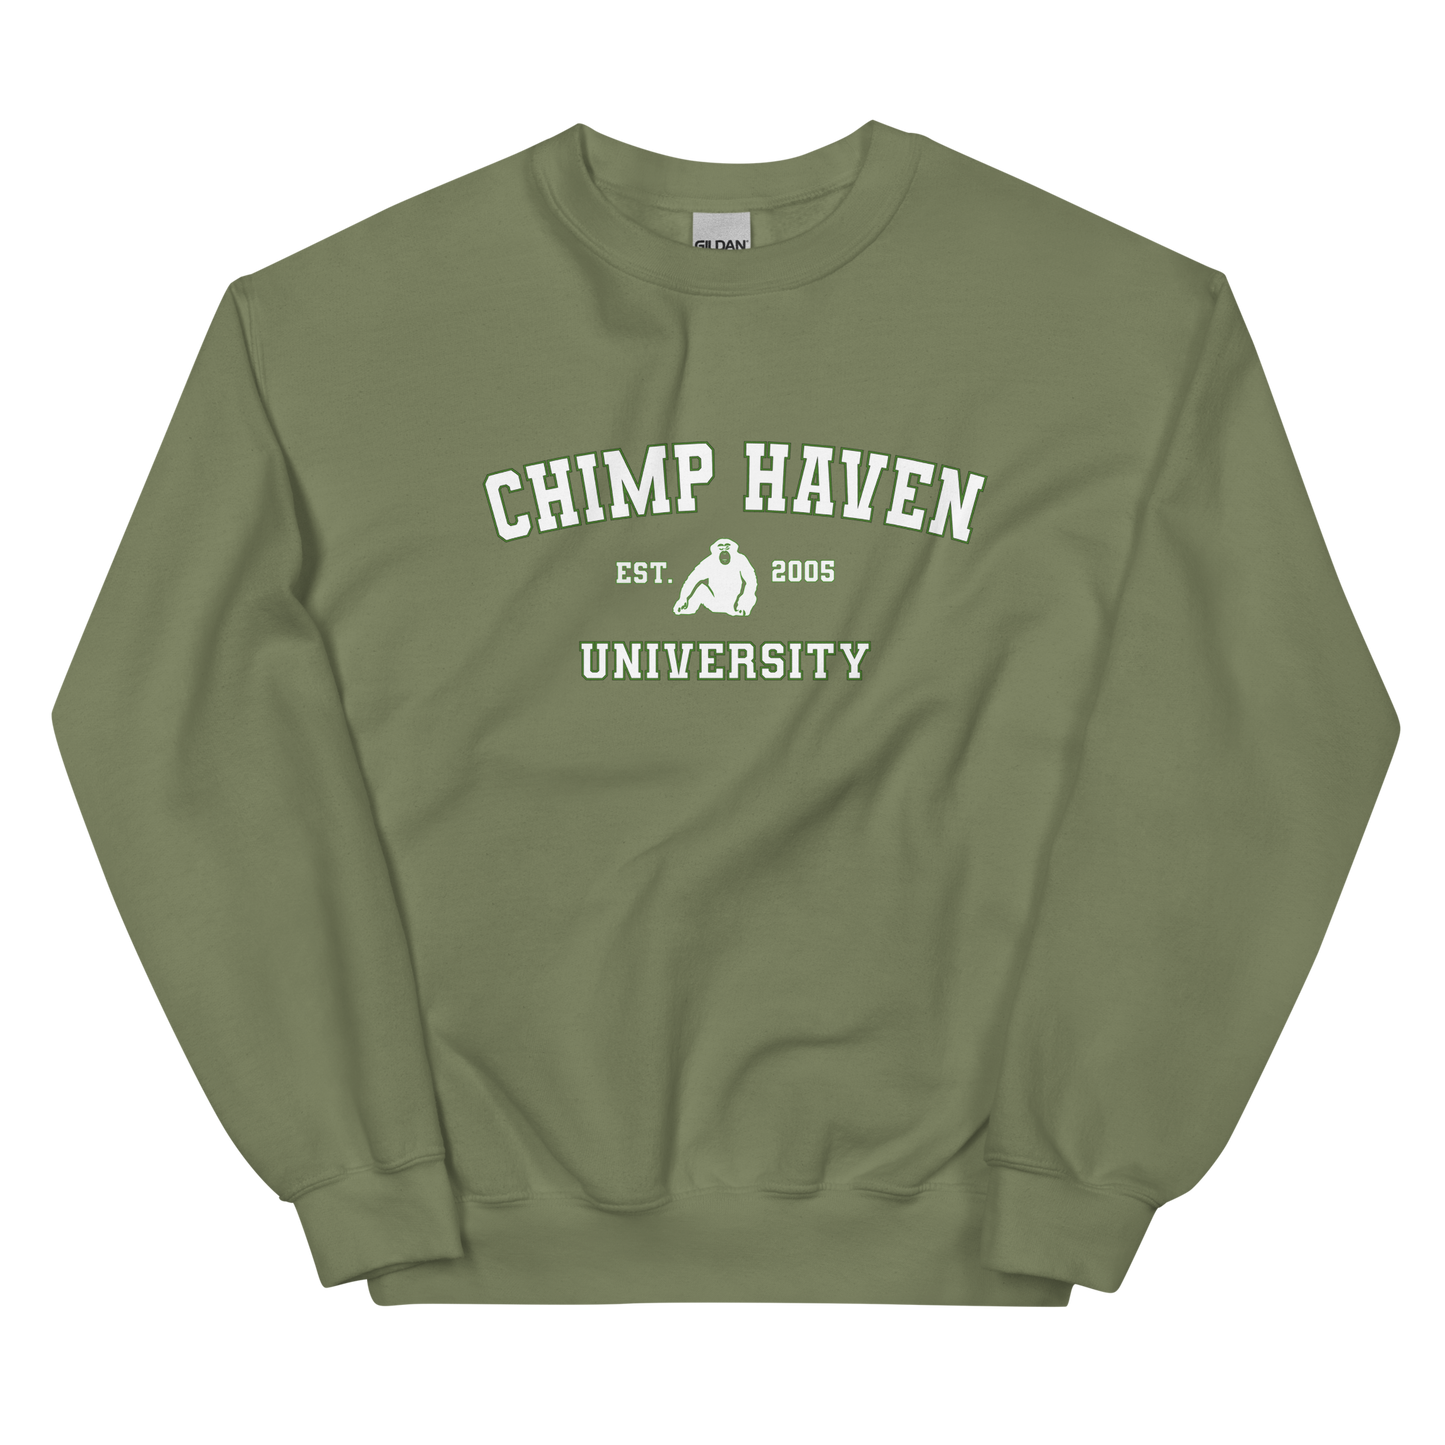 Chimp Haven University Sweatshirt - Green